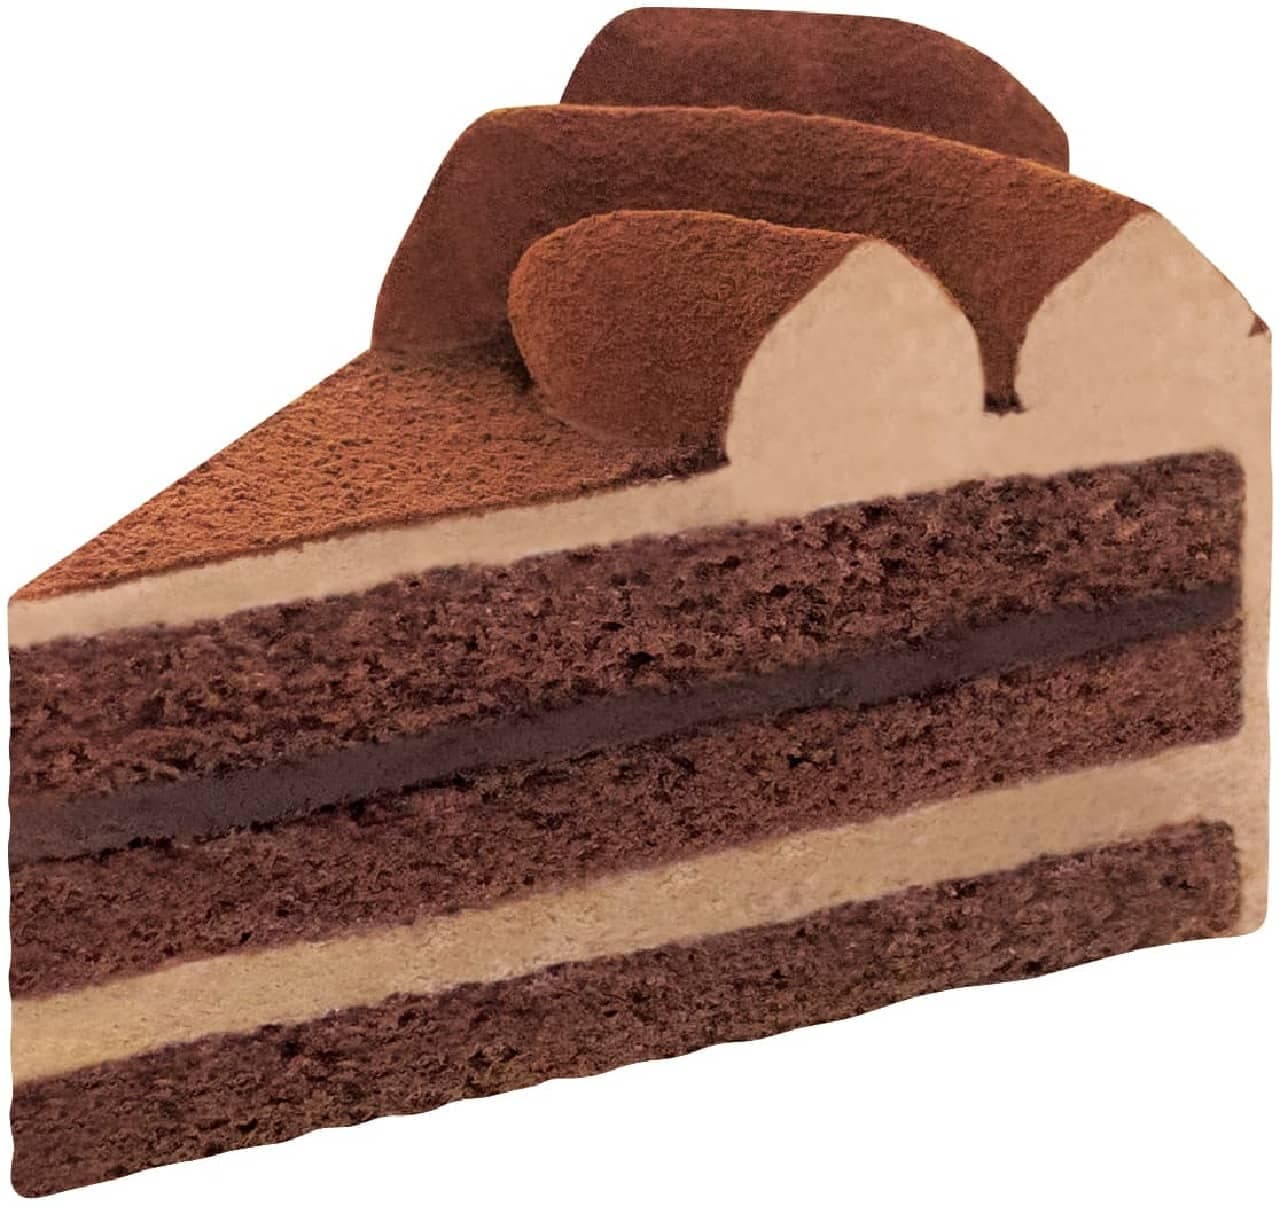 不二家「ハイカカオチョコレートのケーキ」2個セット